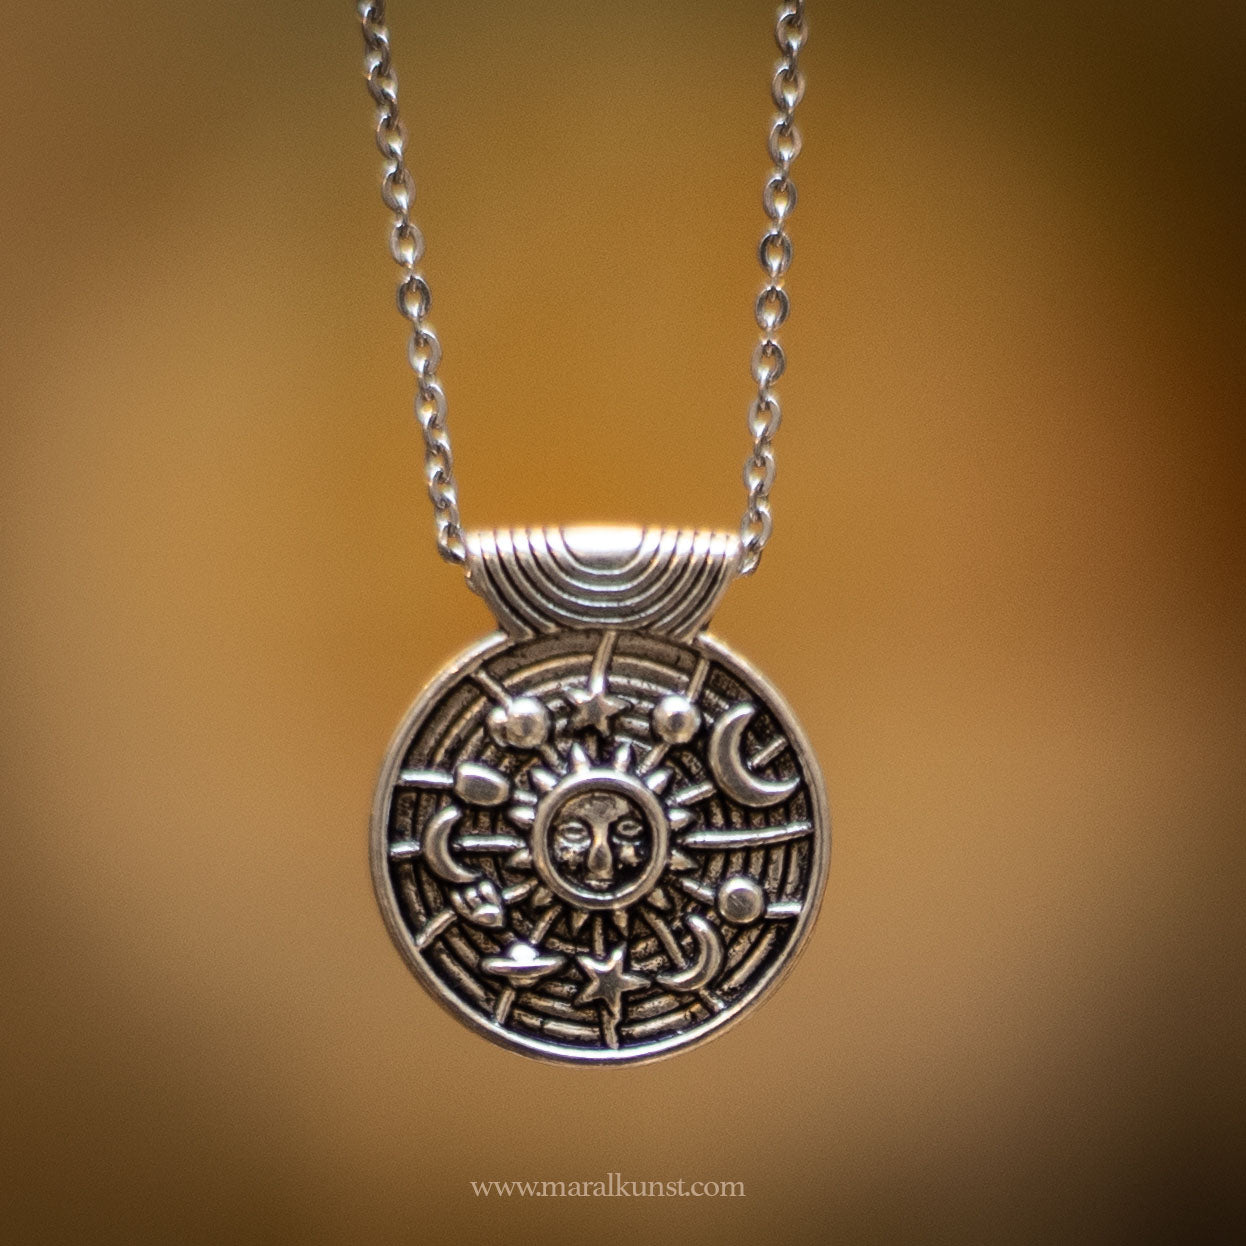 Viking necklace